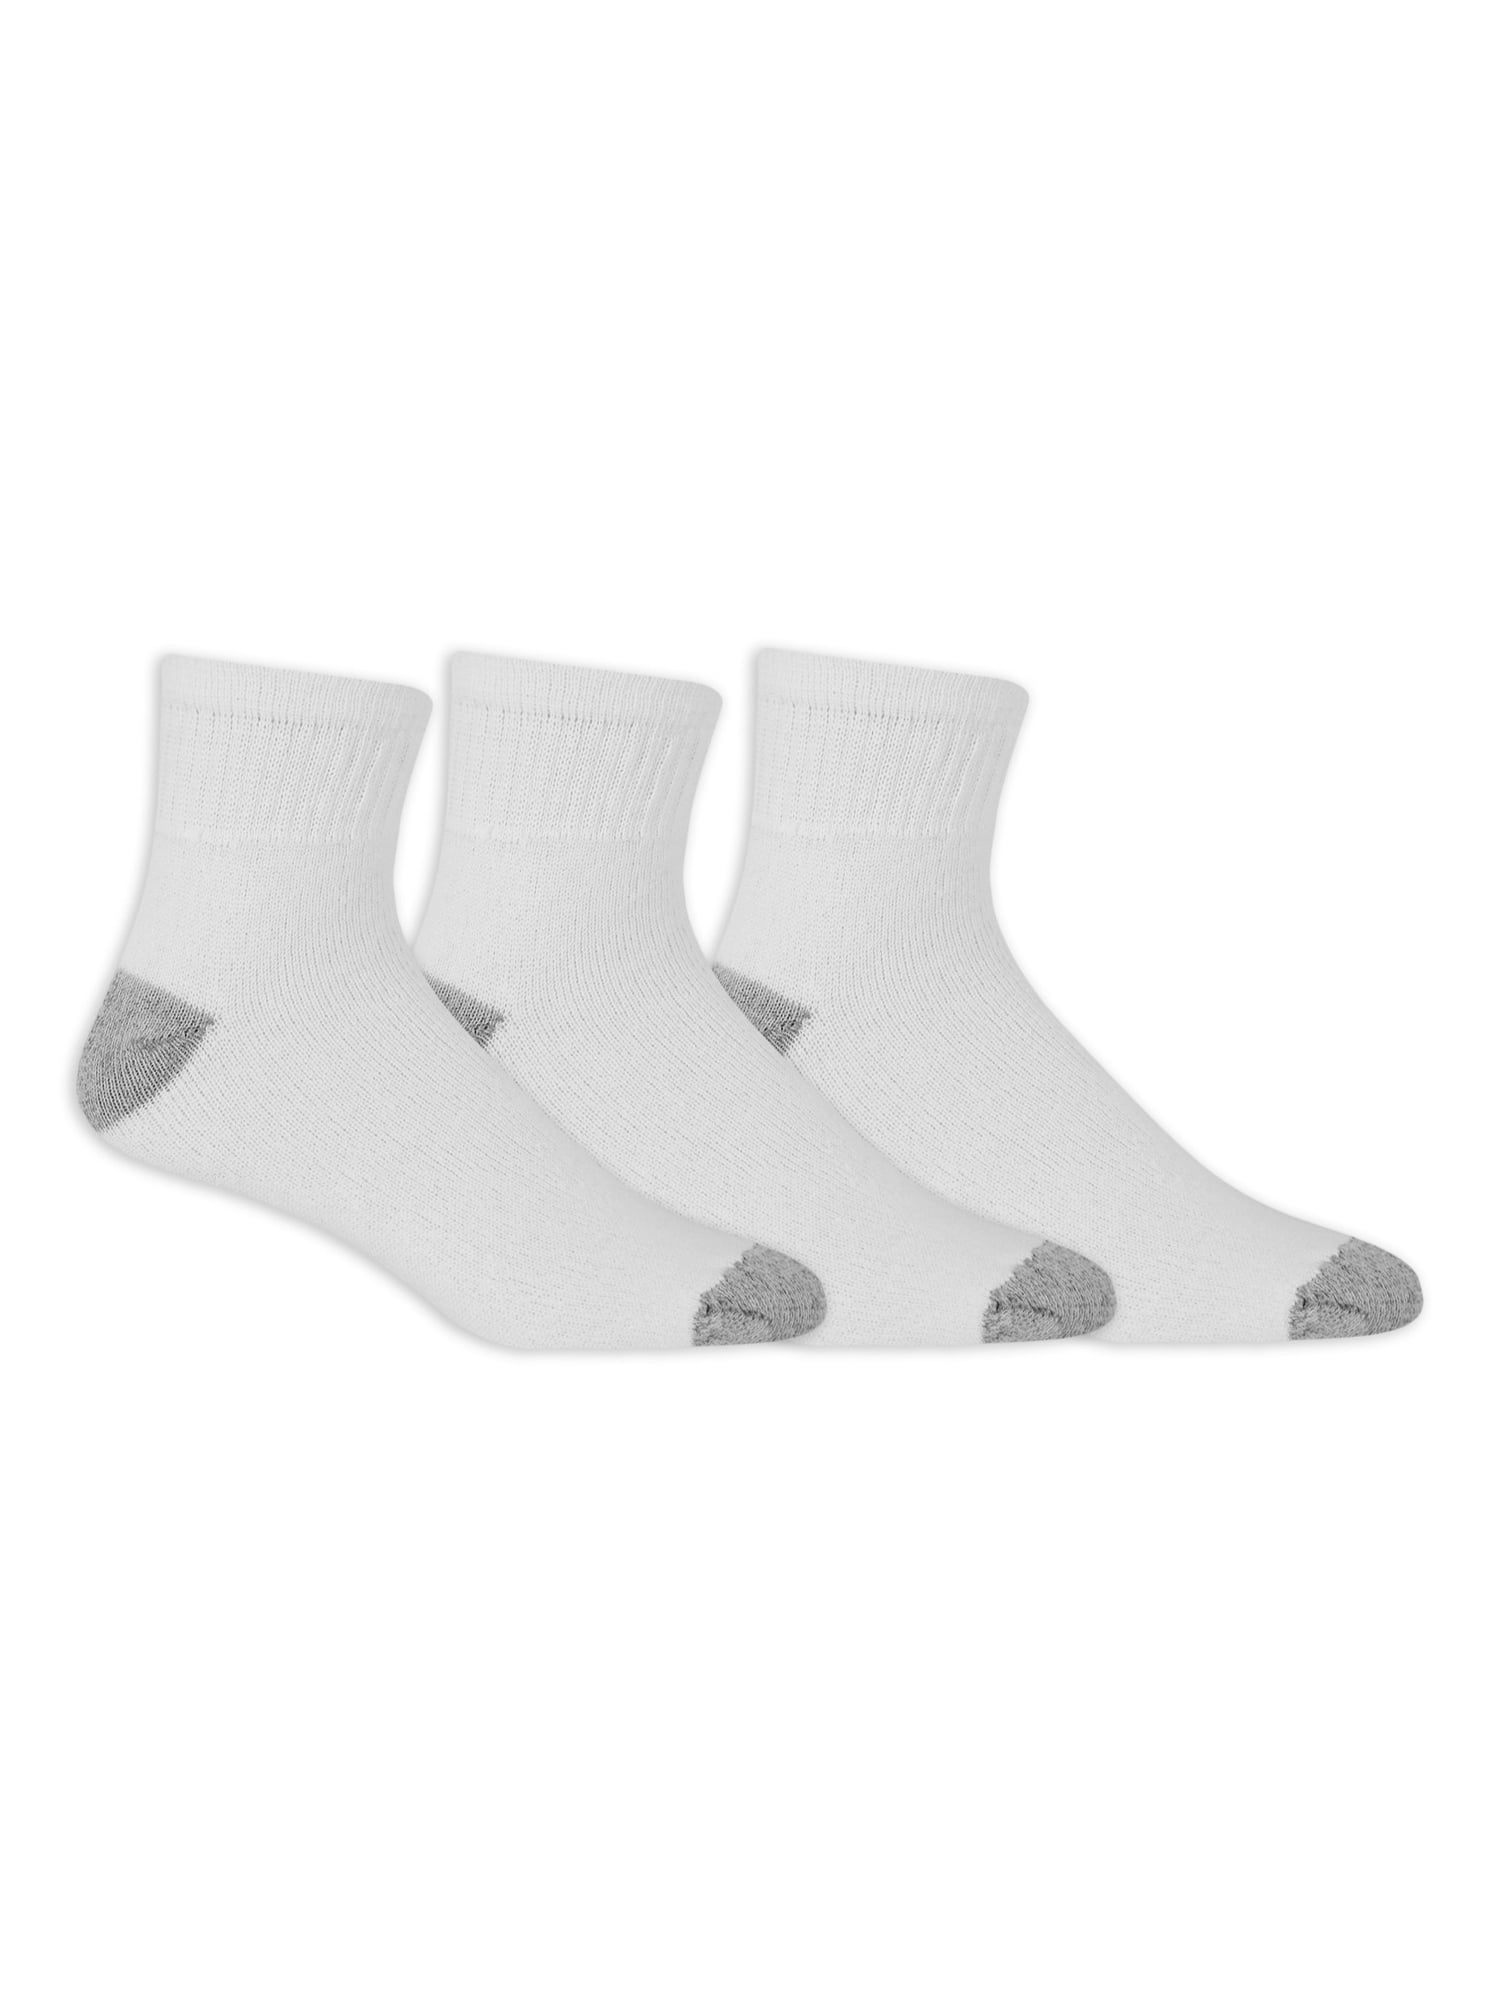 Athletic Works Men's Ankle Socks, 3 Pair Pack - Walmart.com